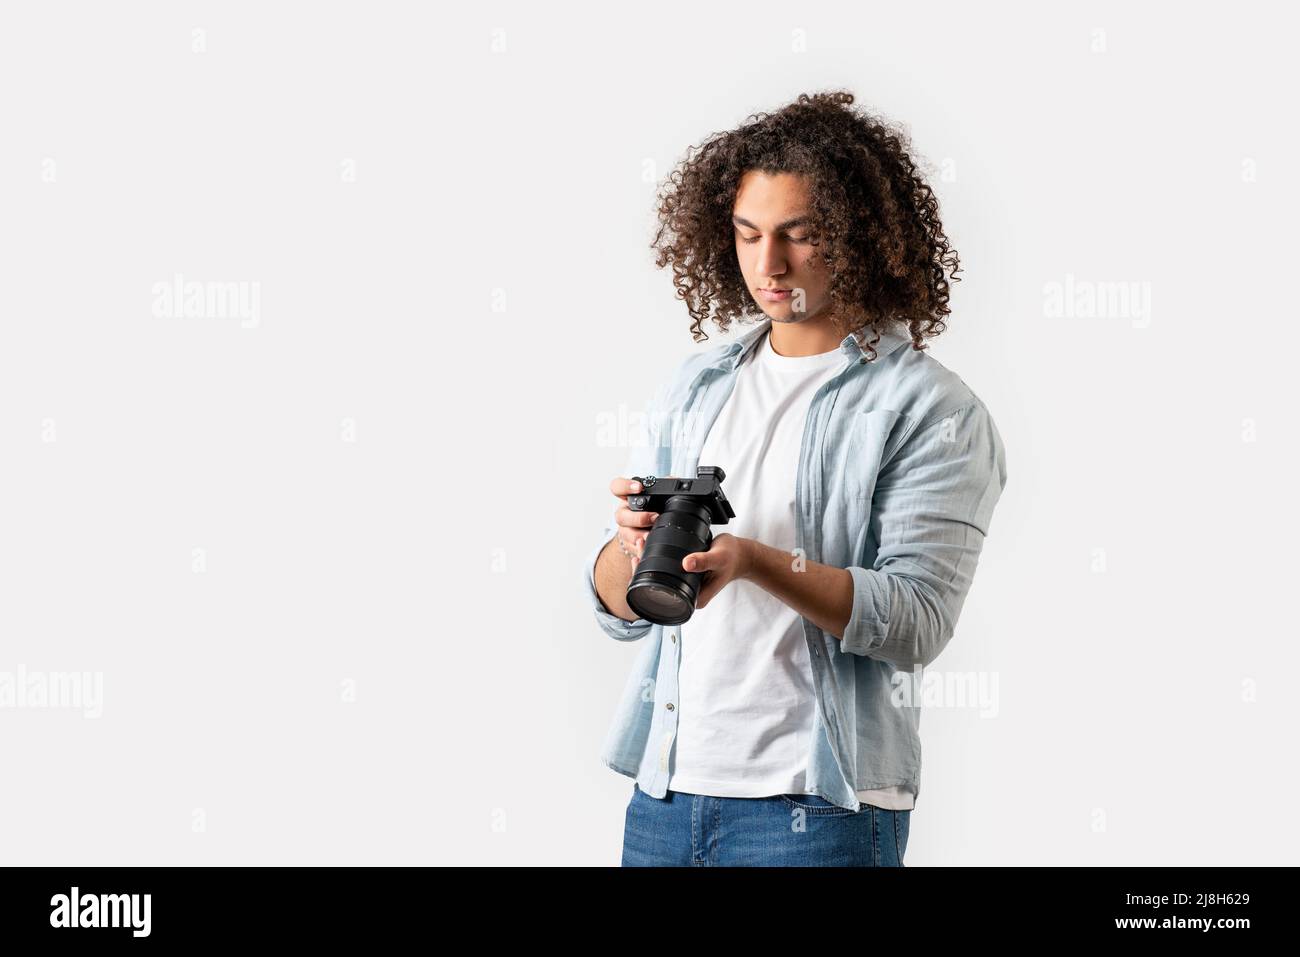 Il giovane uomo con capelli ricci sta tenendo una macchina fotografica sulla sua mano. Concetto di hobby e fotografia. Foto di alta qualità Foto Stock